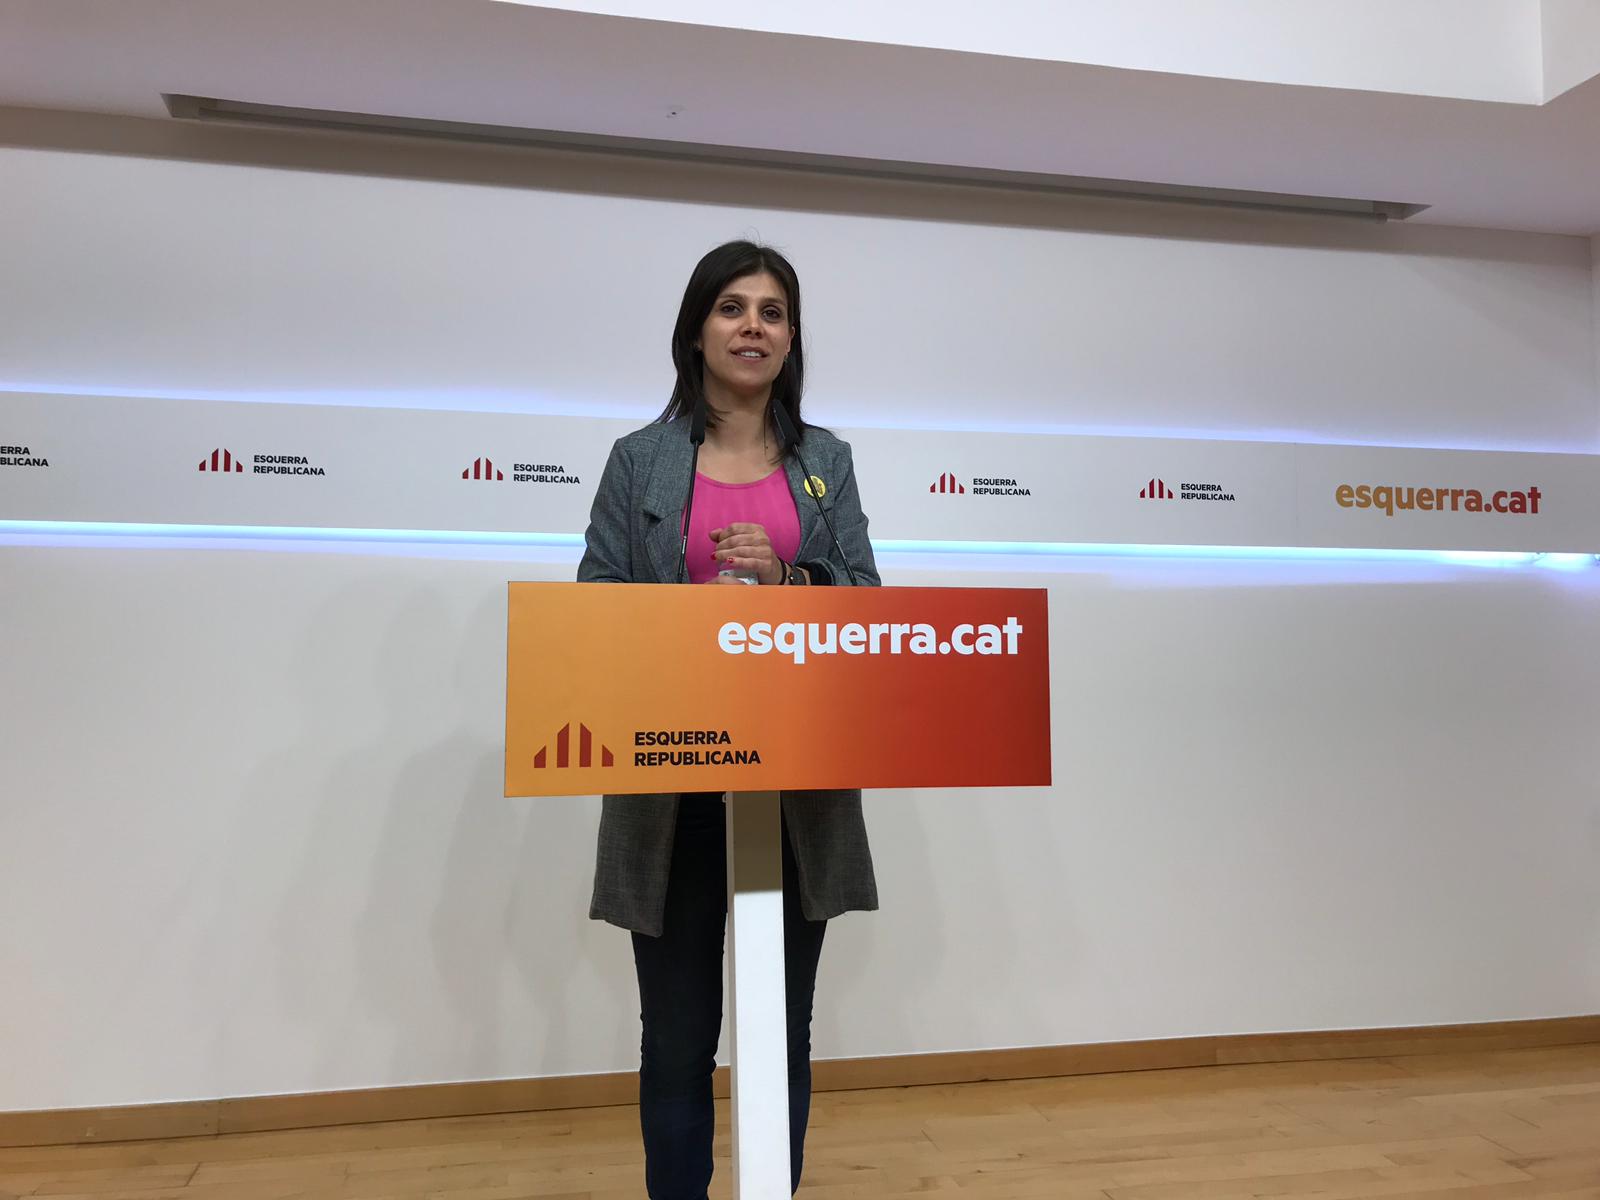 ERC califica la candidatura de Puigdemont de "buena noticia" e insiste en la unidad "estratégica"